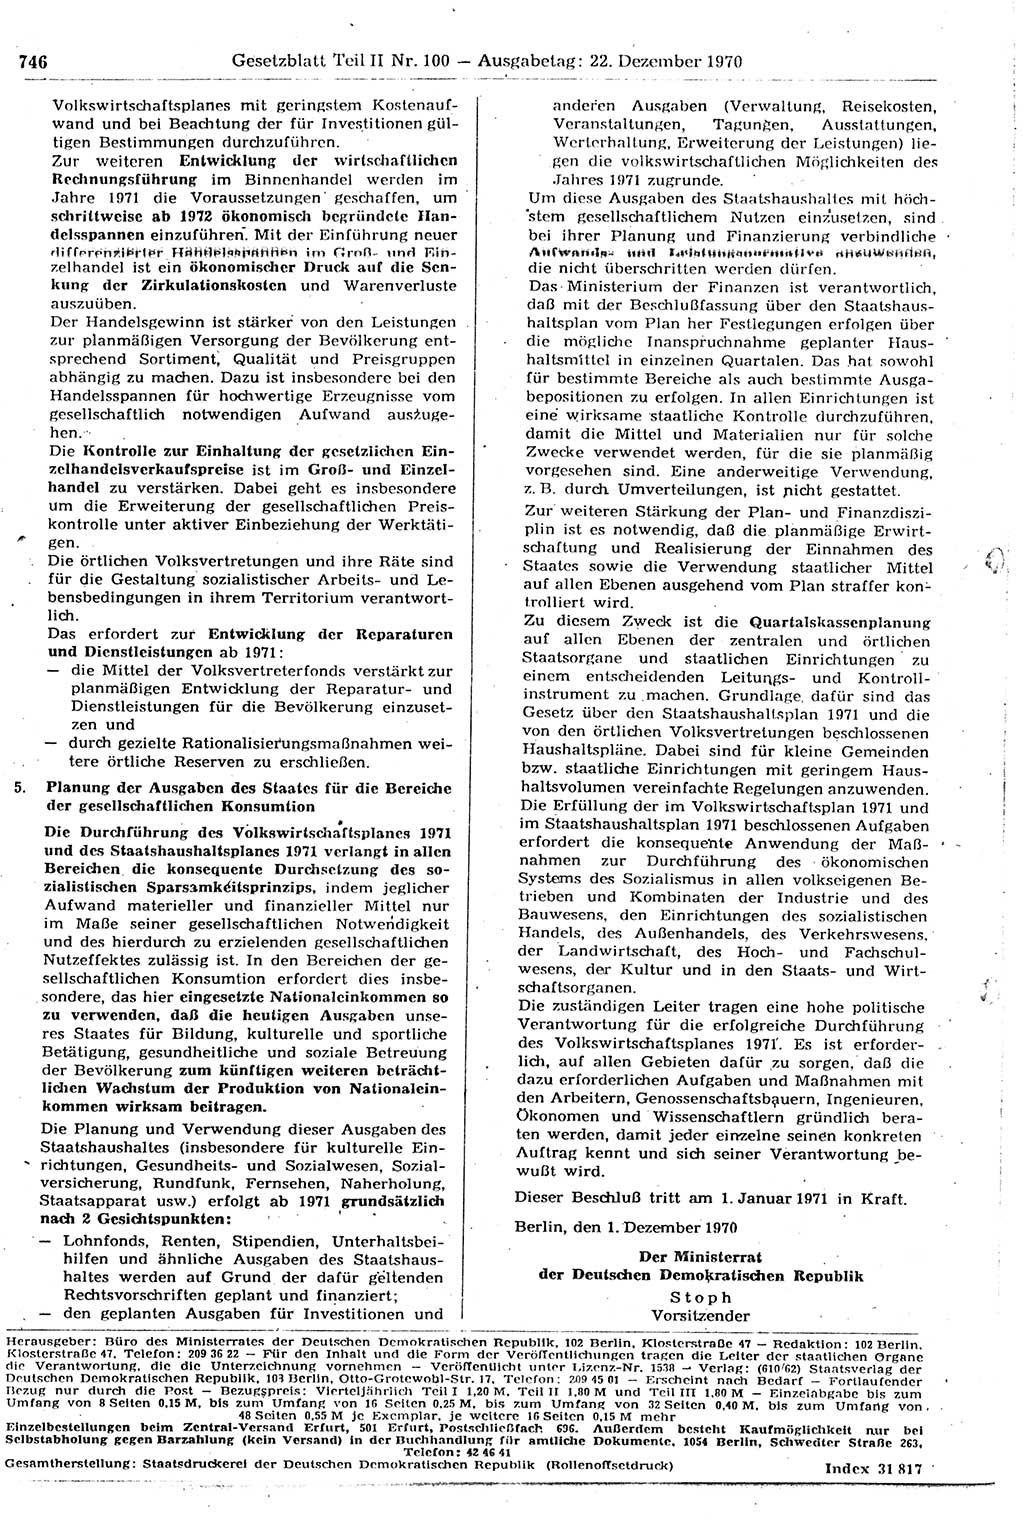 Gesetzblatt (GBl.) der Deutschen Demokratischen Republik (DDR) Teil ⅠⅠ 1970, Seite 746 (GBl. DDR ⅠⅠ 1970, S. 746)